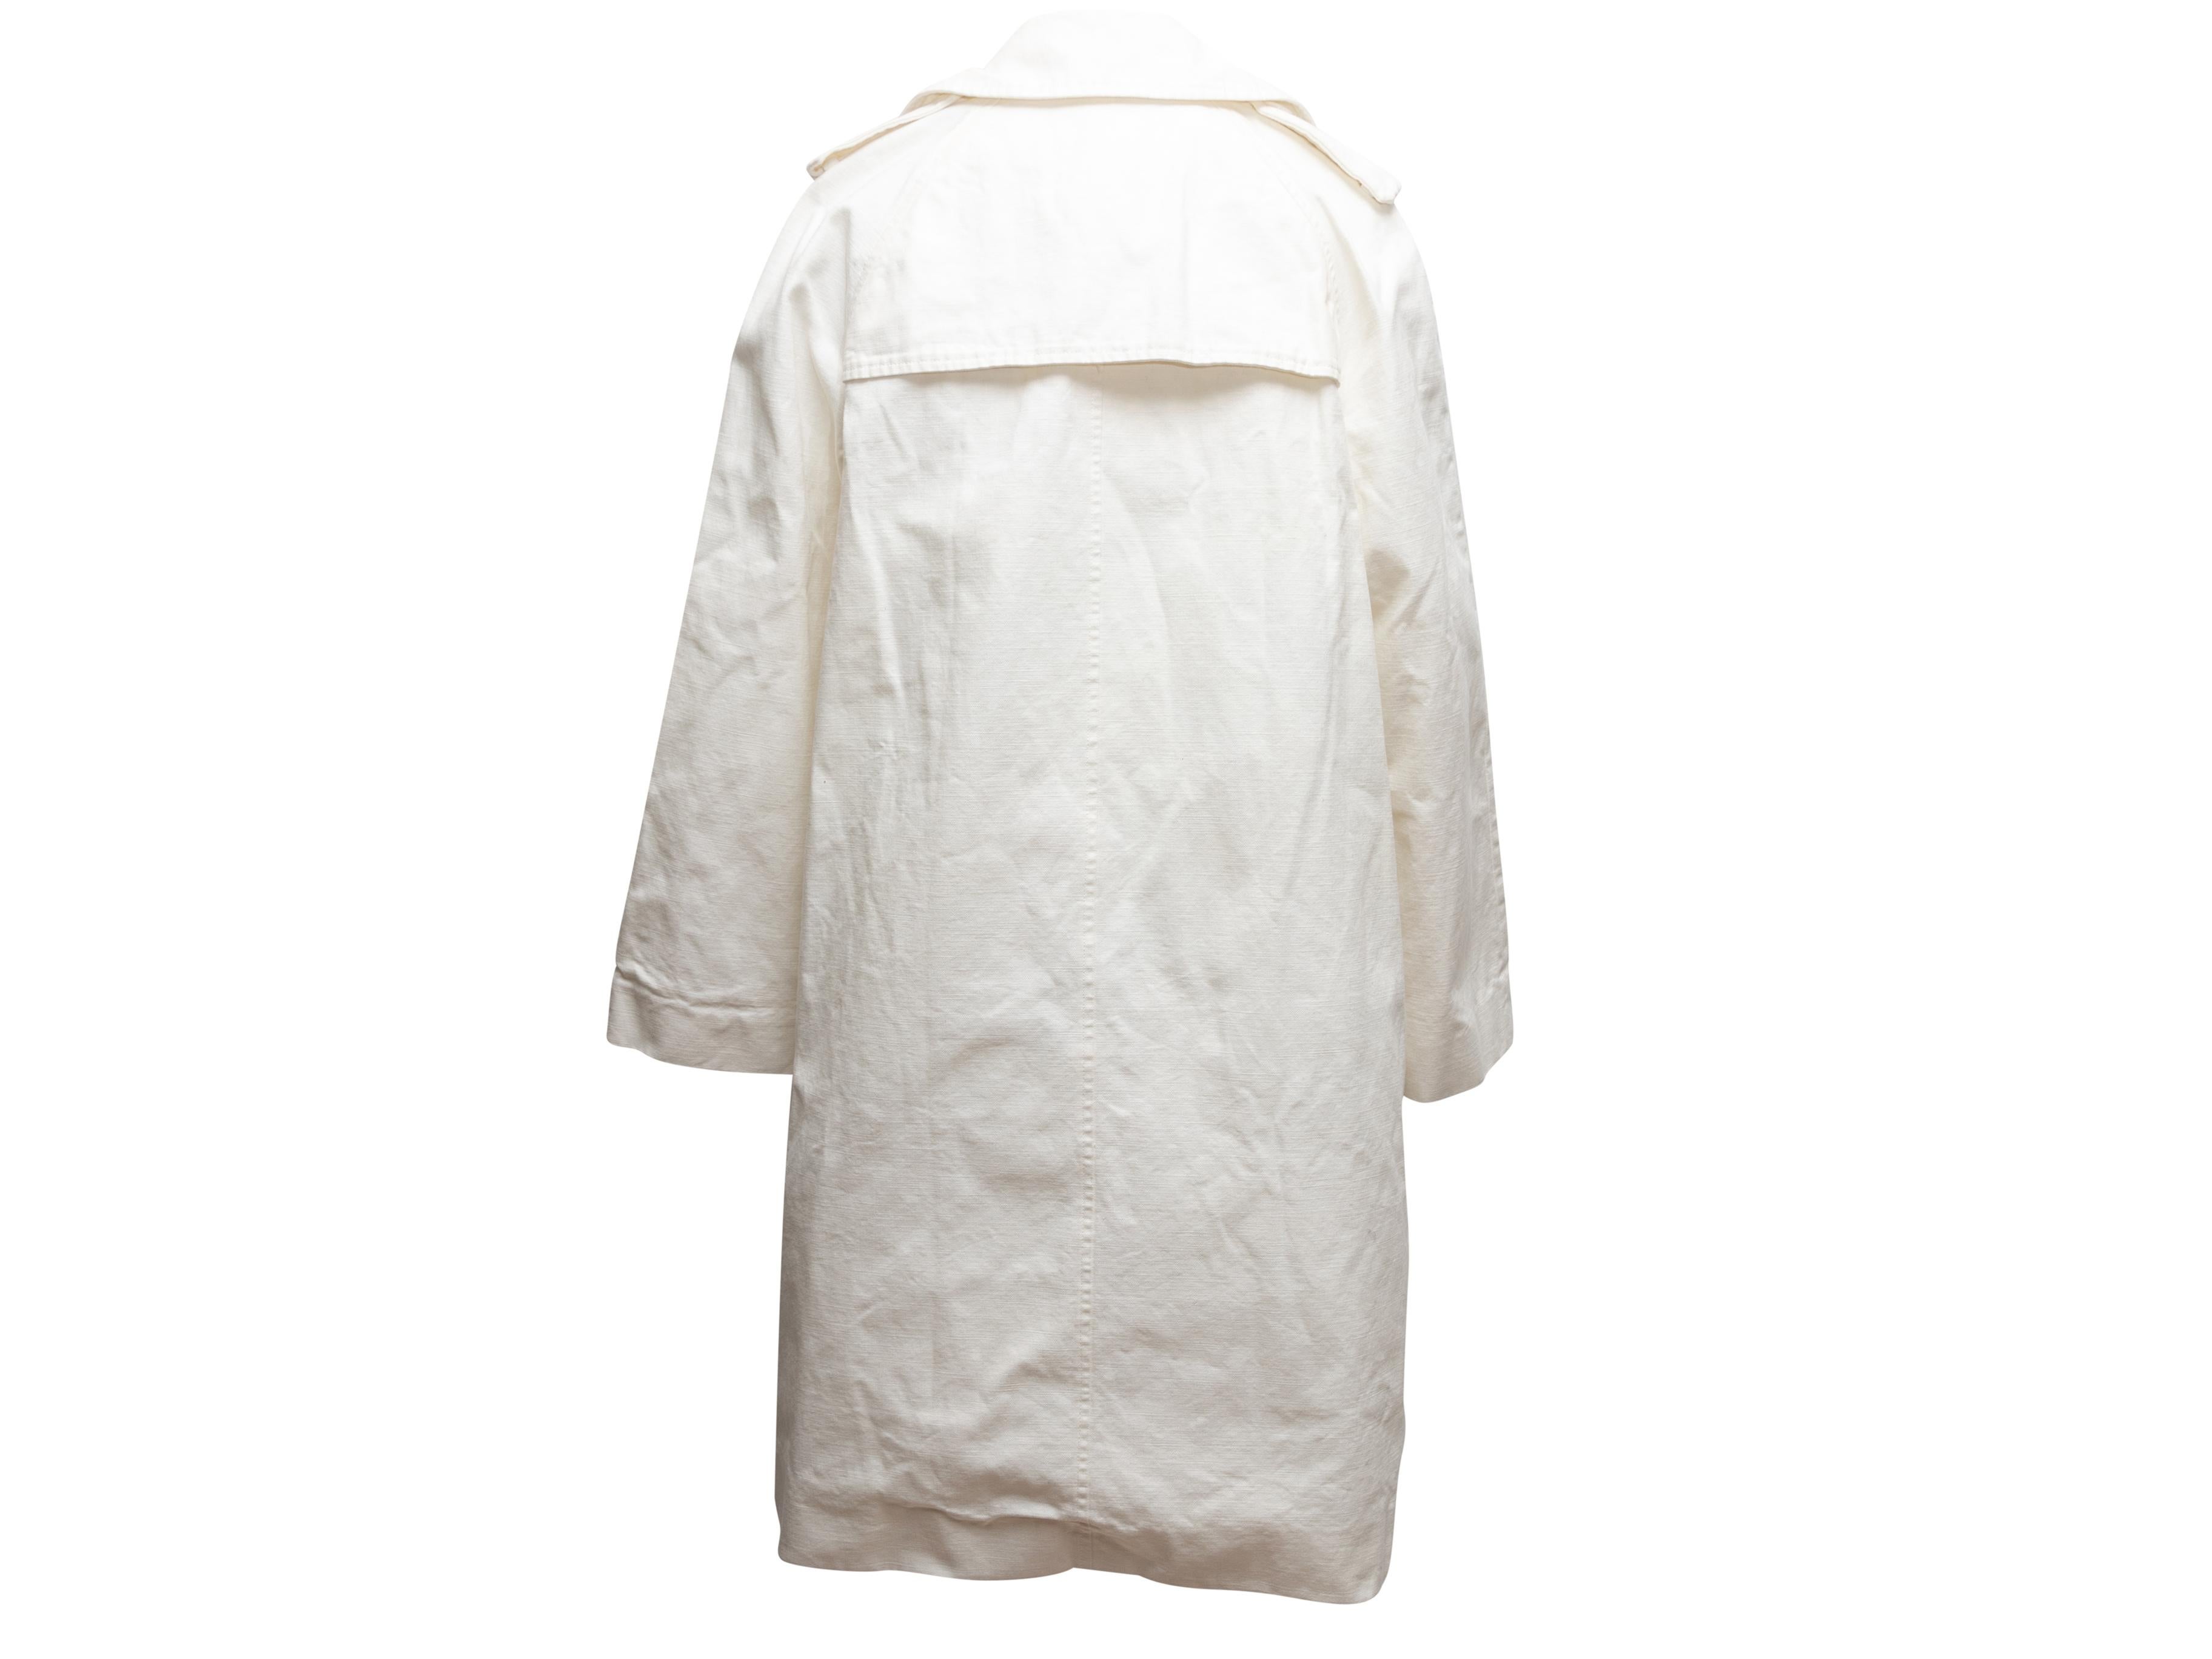 Weißer D&G-Trenchcoat aus Baumwolle in Weiß, Größe IT 44 2